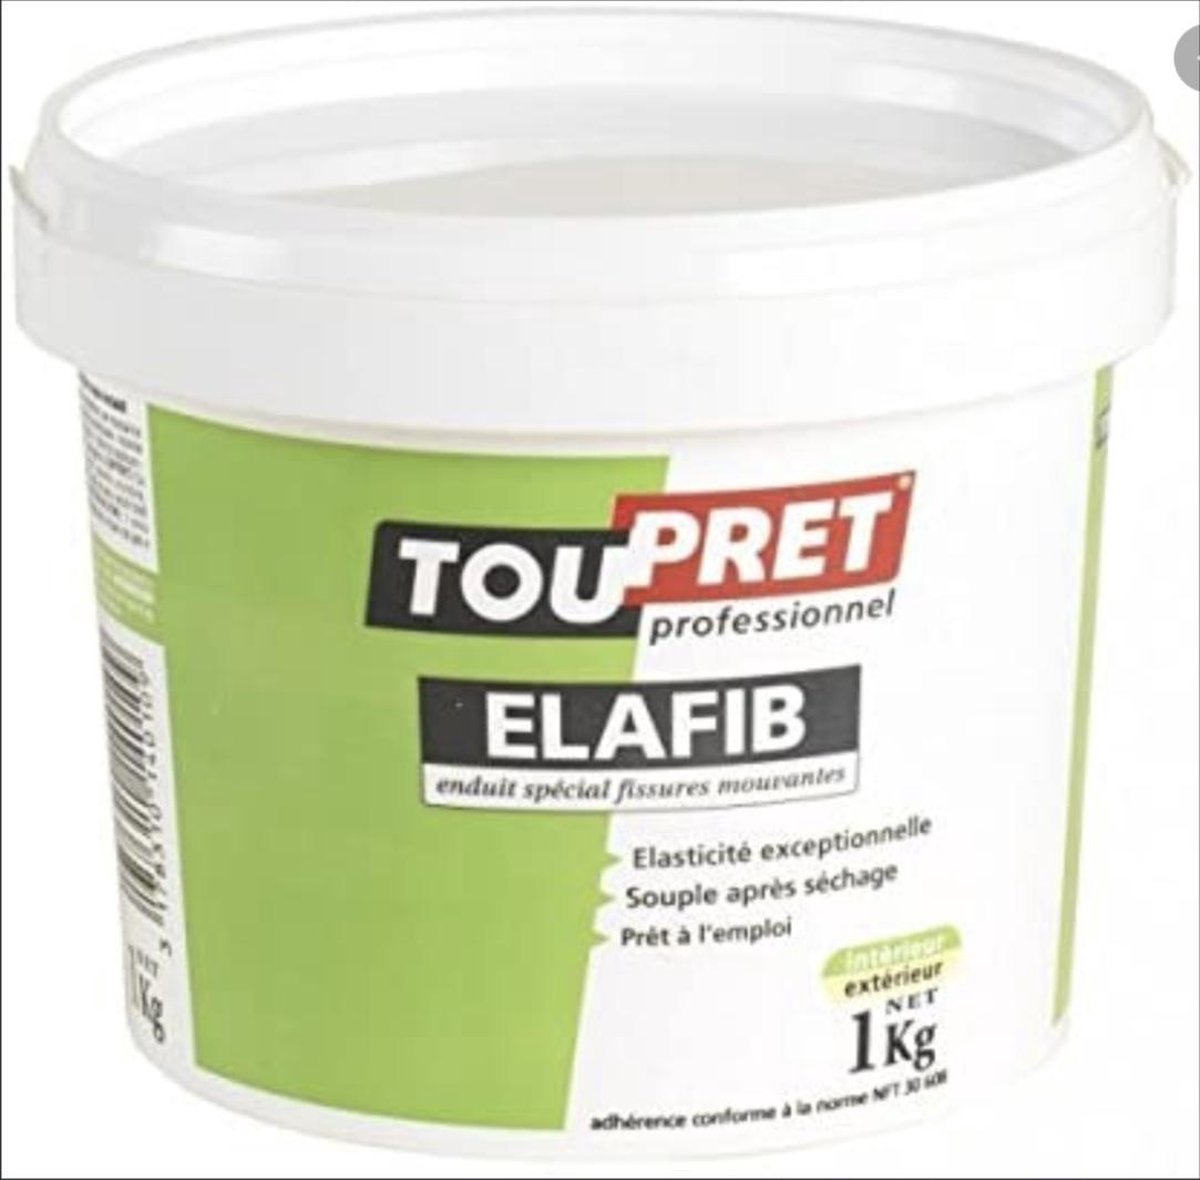 TOUPRET Elafib 1KG - Speciale coating voor het vullen van scheuren en gaten.